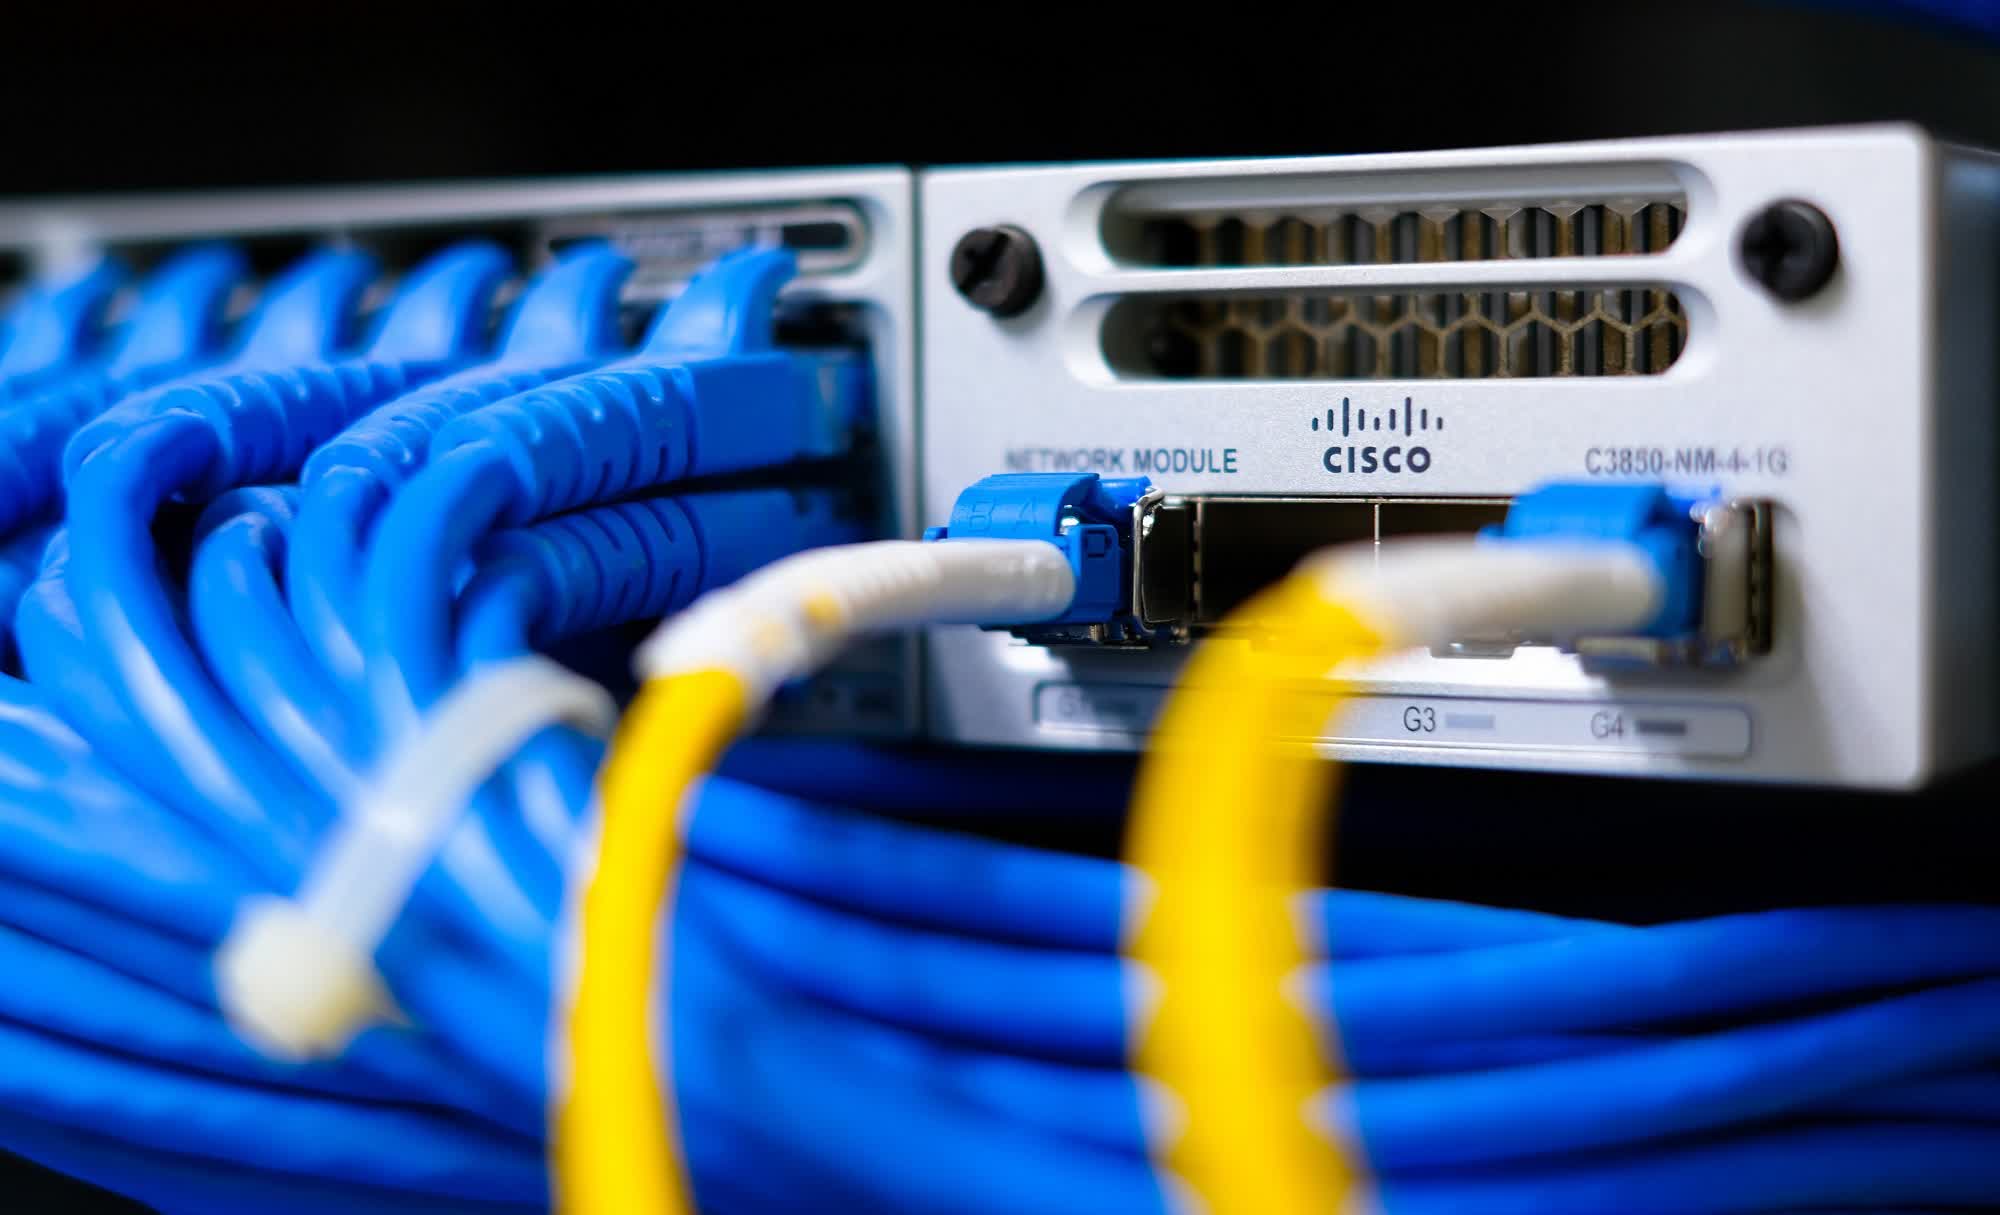 Un responsable de sécurité de système d’information condamné à 2 ans de prison pour avoir vendu des switchs Cisco sur eBay